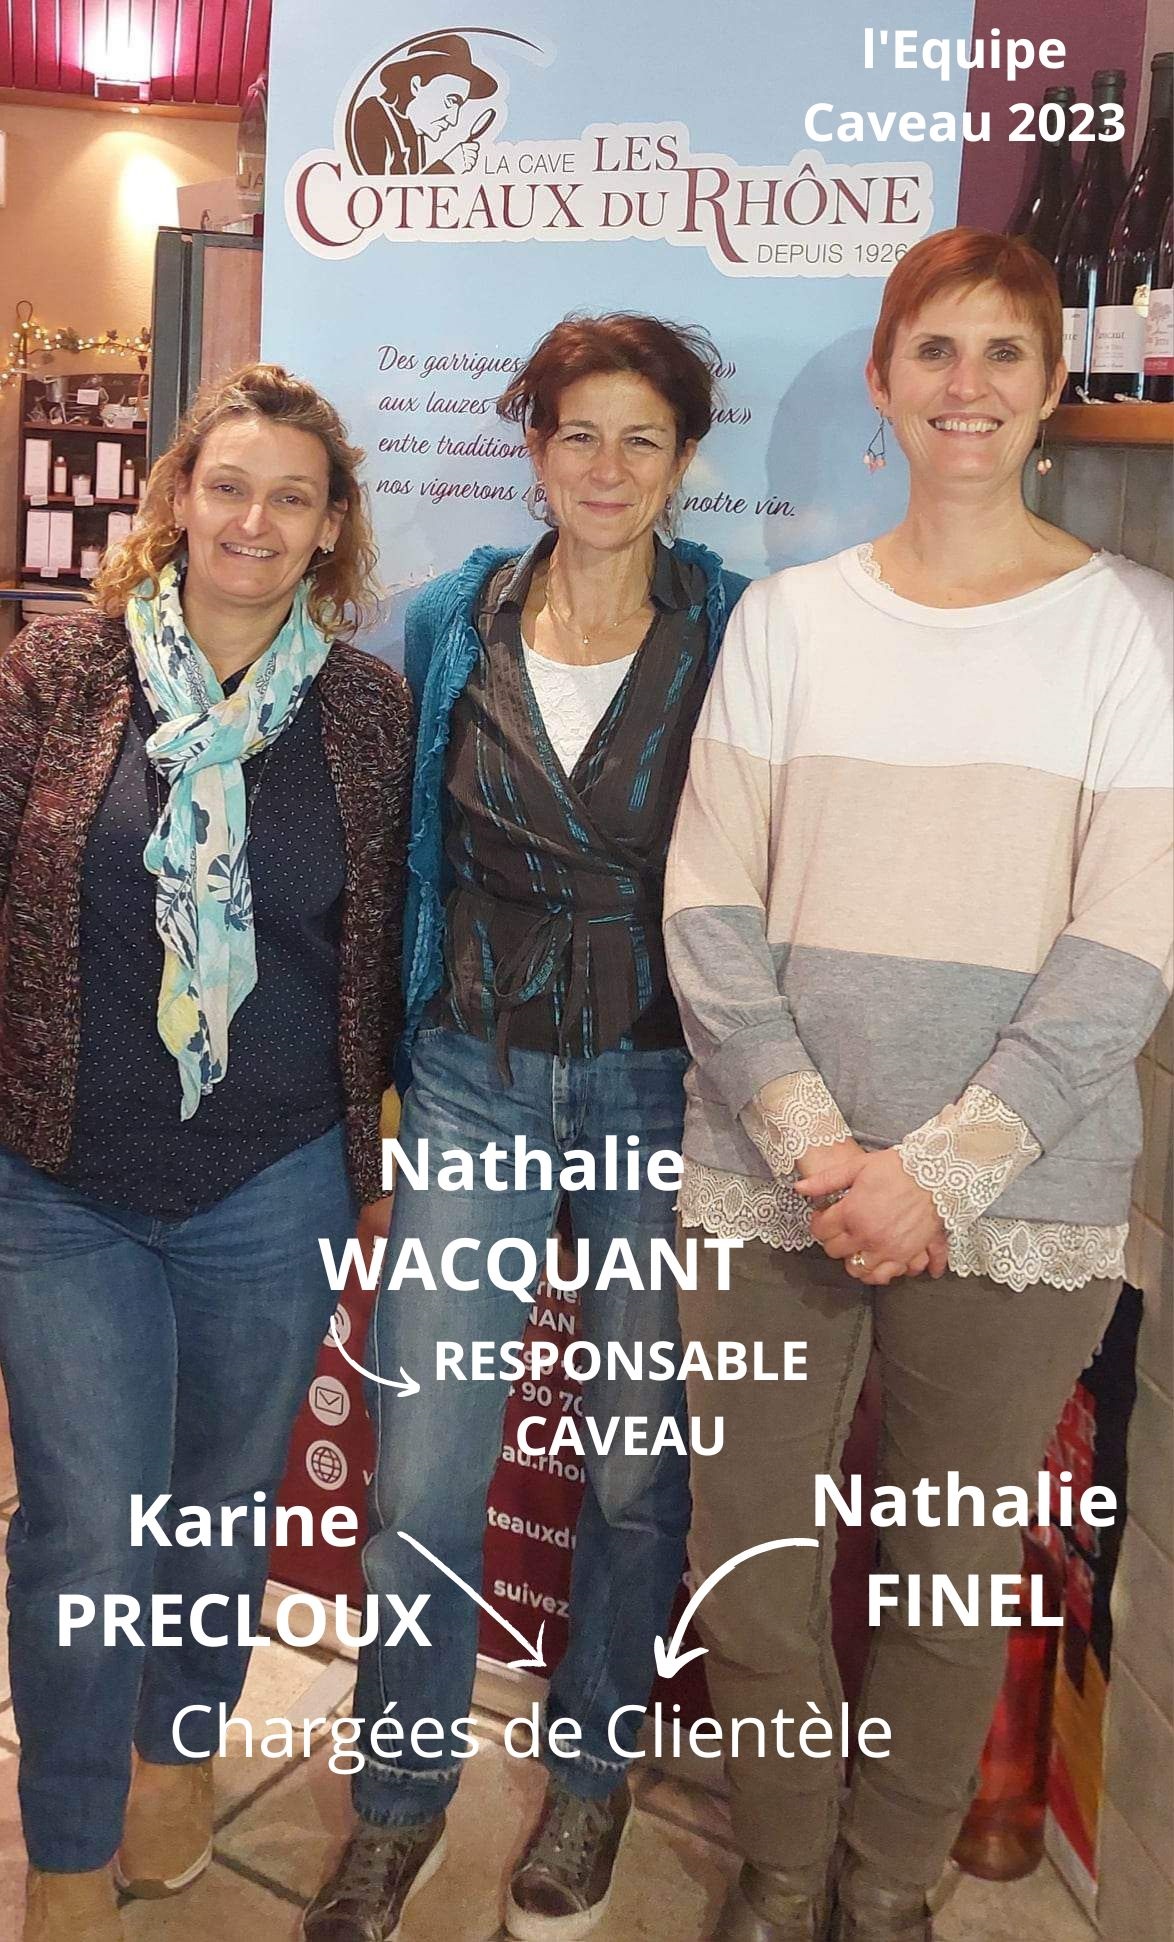 Notre équipe : Nathalie W - Nathalie F - Karine P et Muriel Men renfort